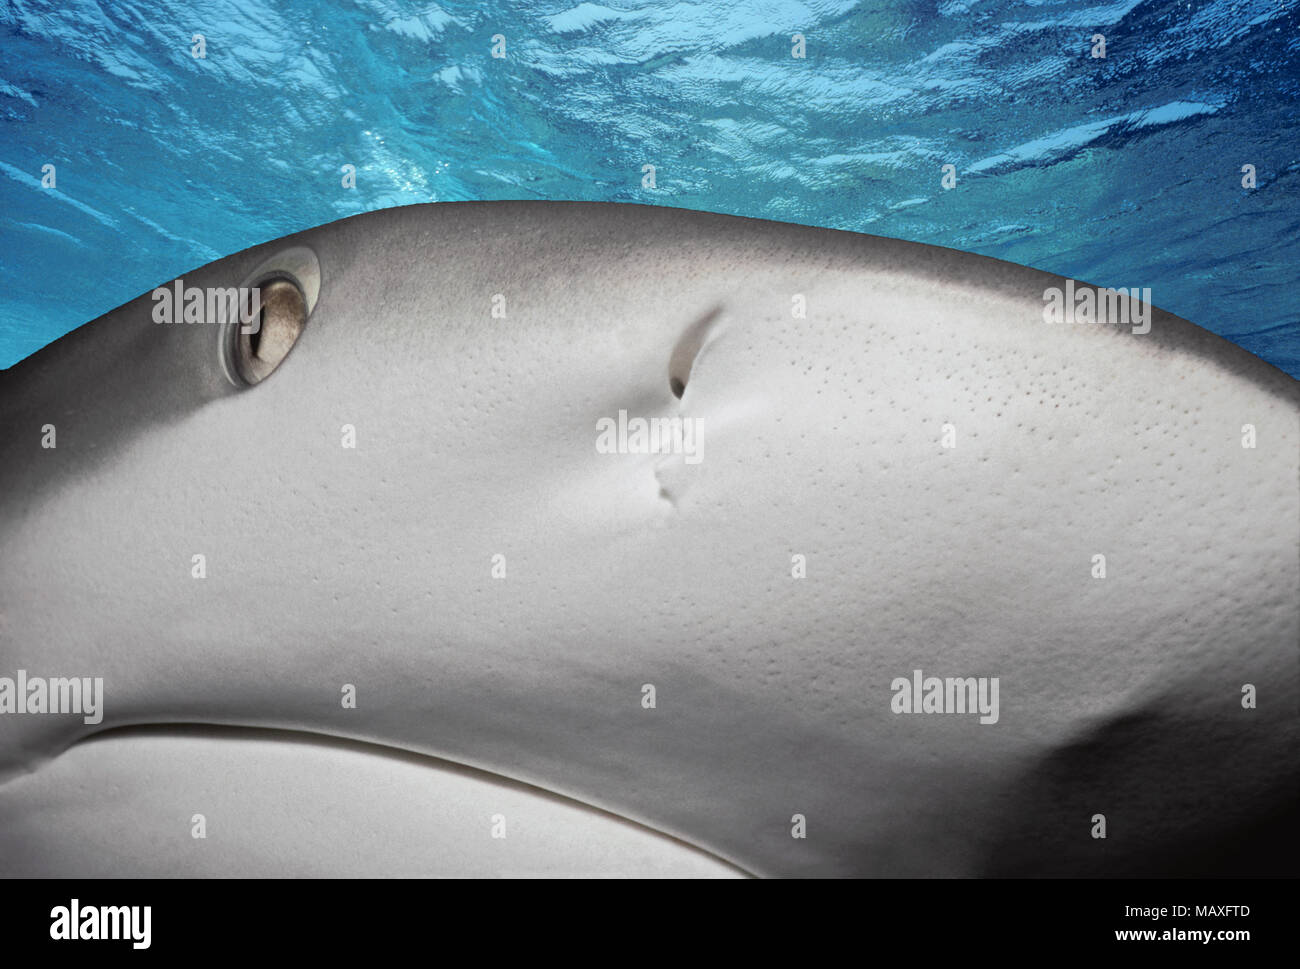 Karibische Riffhai (Carcharhinus perezi), Bahamas - Karibik. Dieses Bild wurde digital nachbearbeitet, abgelenkt oder zu mehr inte hinzufügen zu entfernen. Stockfoto